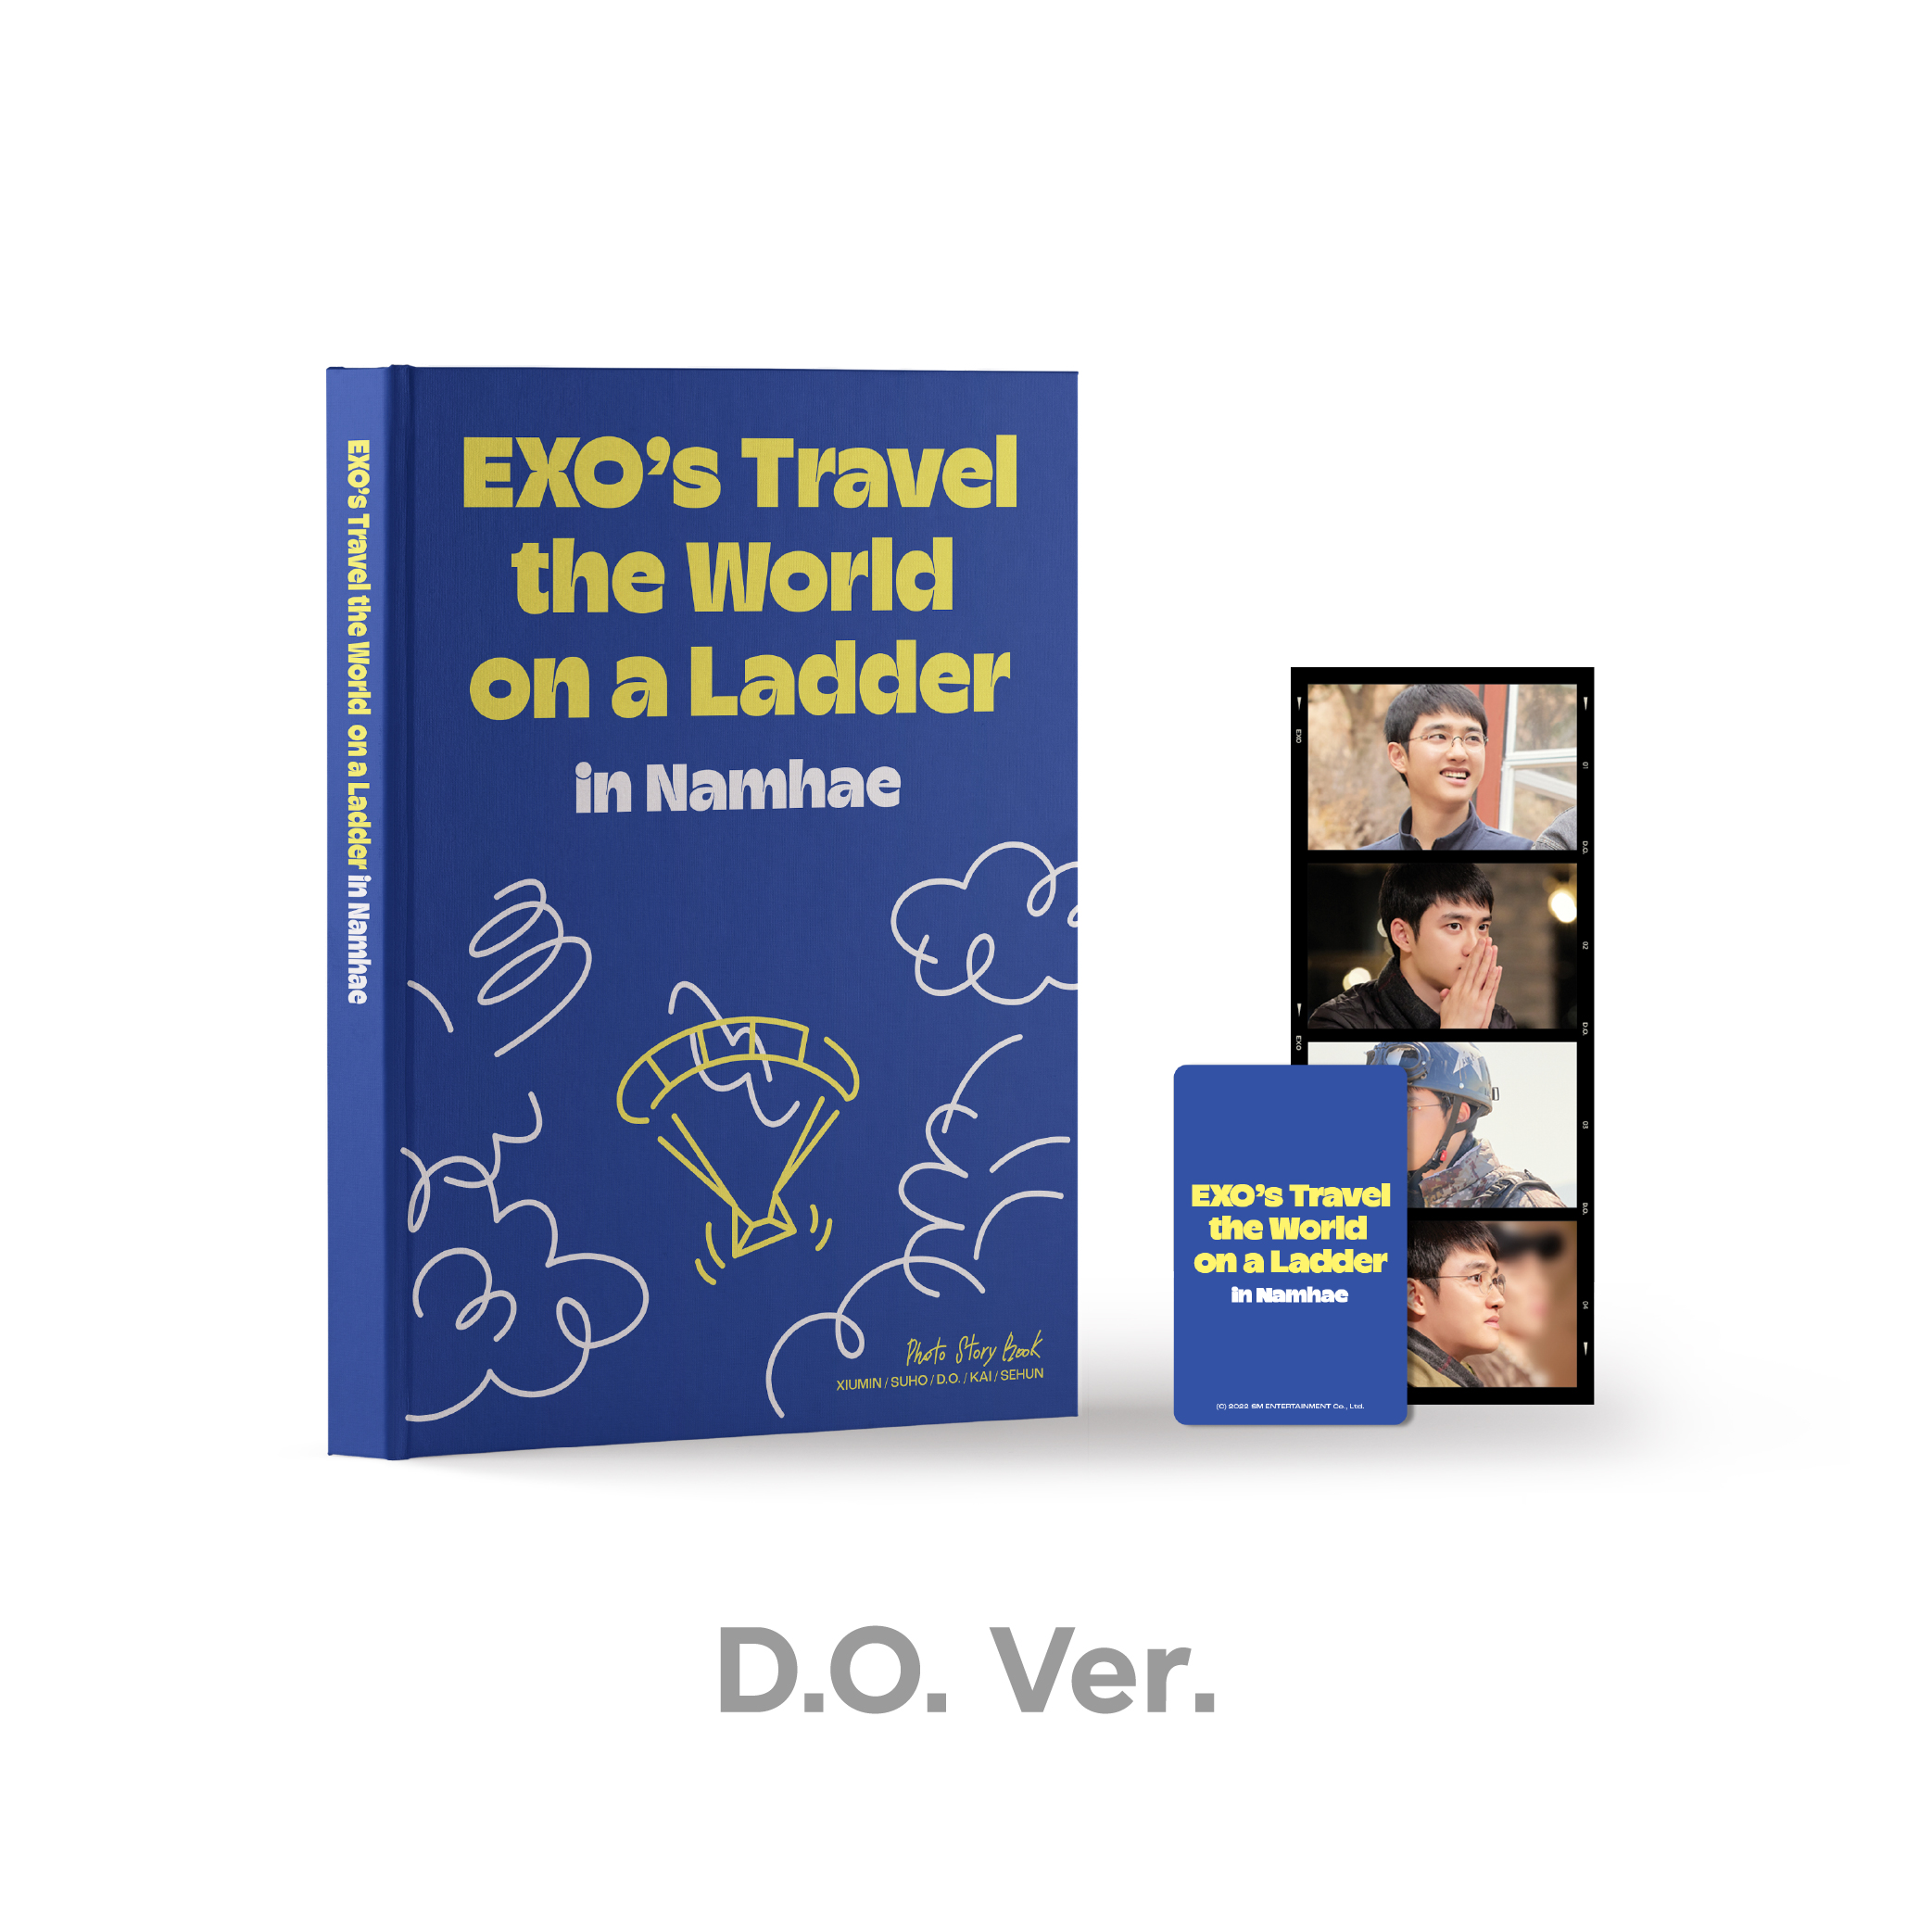 EXO - 엑소의 사다리 타고 세계여행 - 남해 편 PHOTO STORY BOOK [D.O. Ver.]